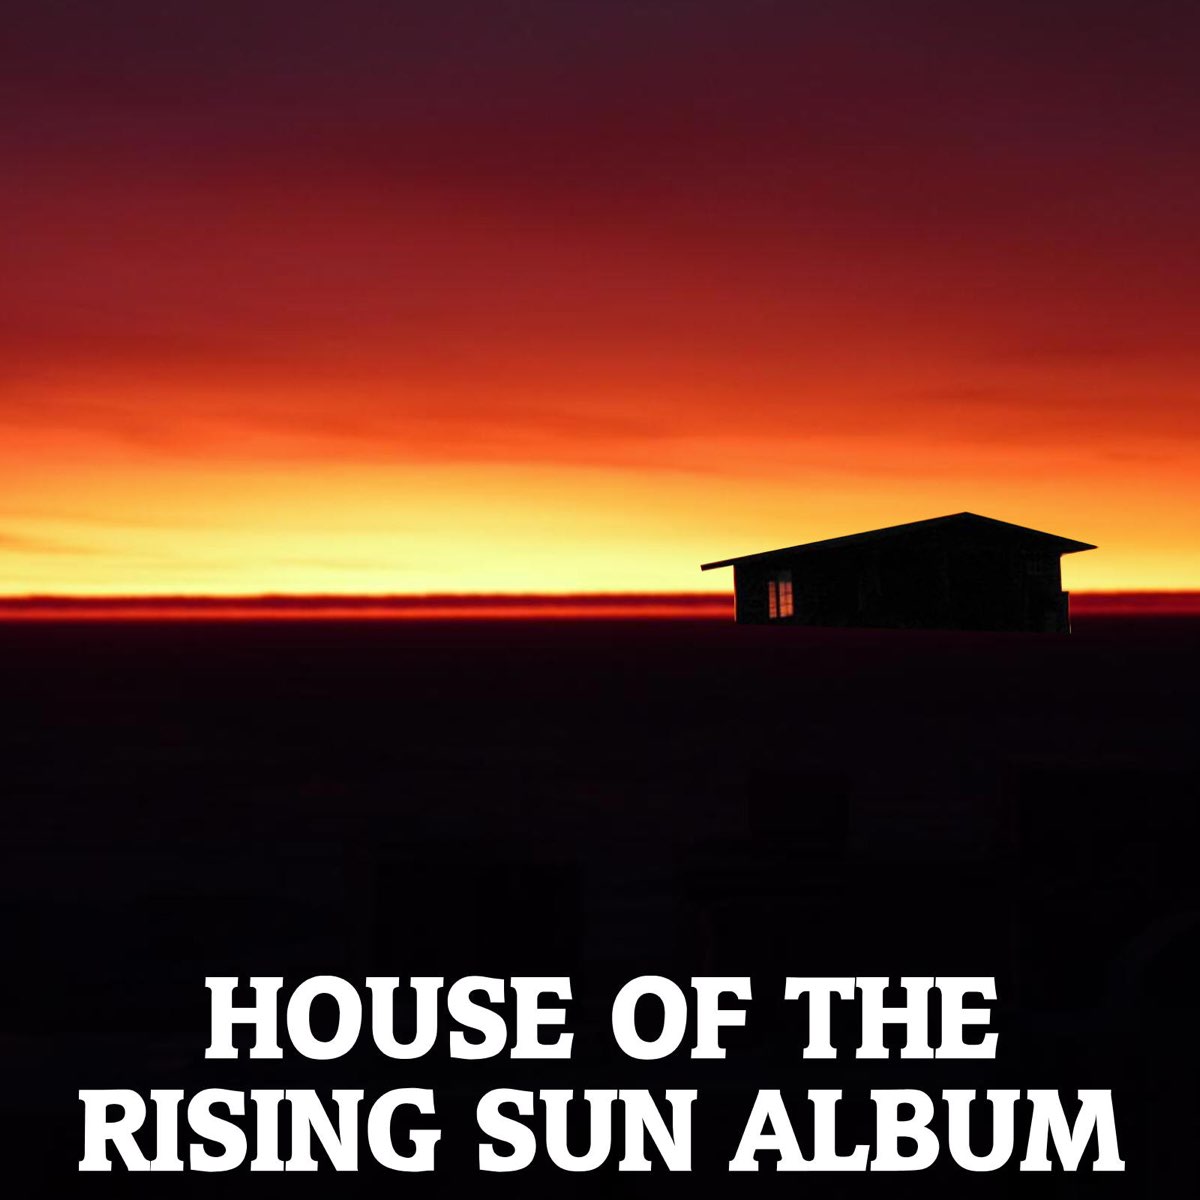 Поставь дом восходящего солнца. House of the Rising Sun. House of Rising Sun альбом. Дом восходящего солнца новый Орлеан. House of the Rising Sun обложка.